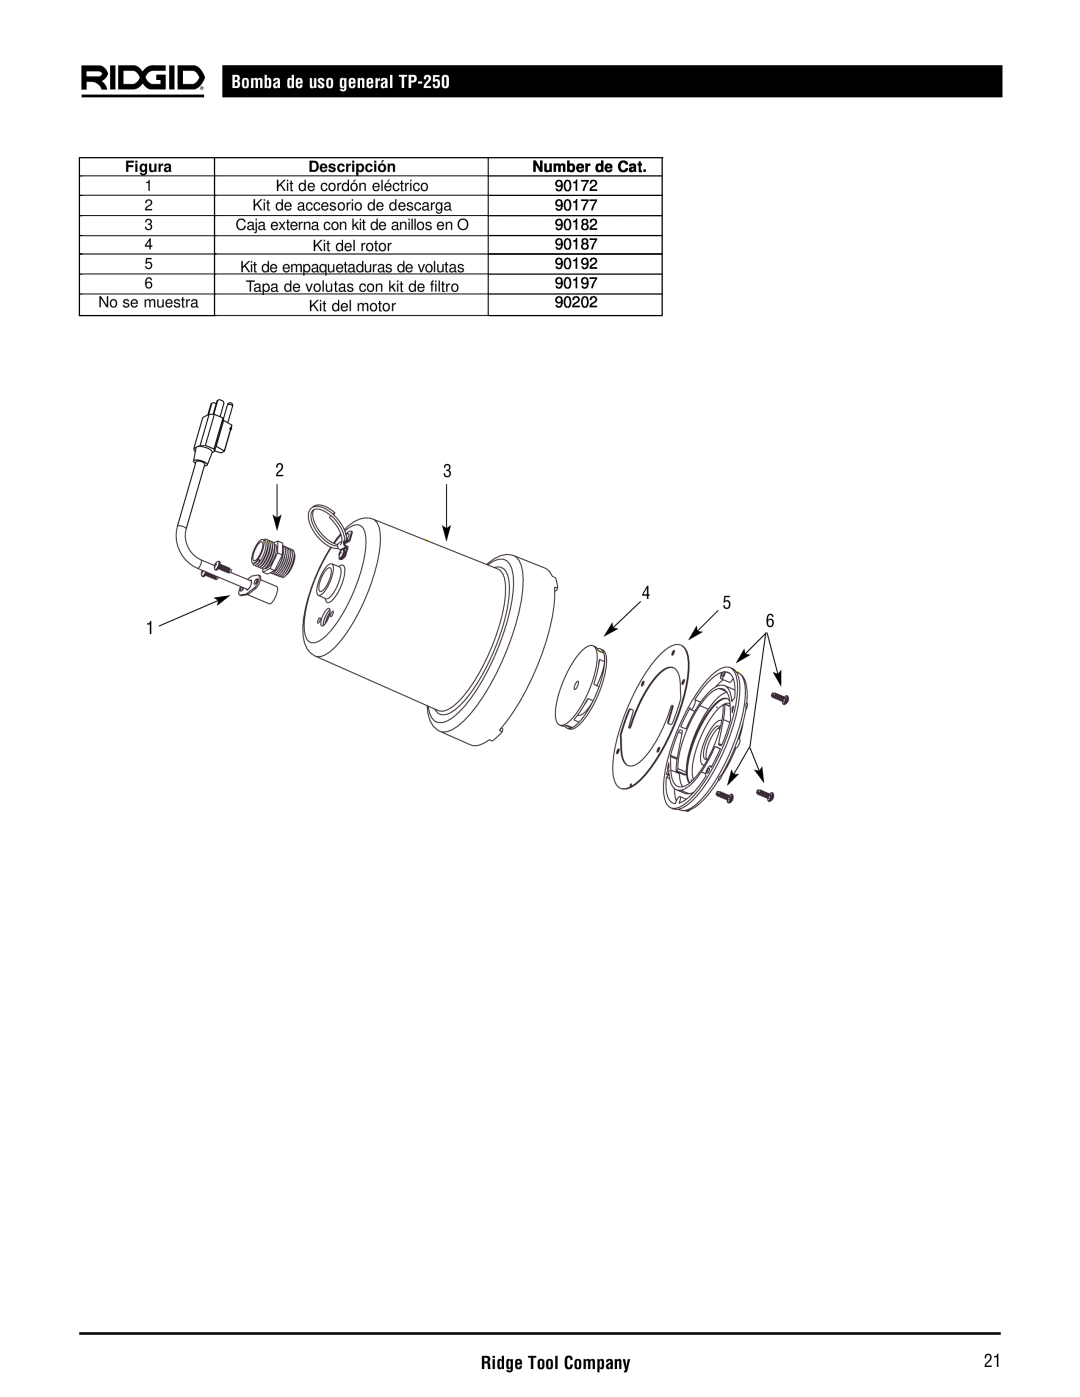 RIDGID manual Bomba de uso general TP-250, Ridge Tool Company, Figura, Descripción, Number de Cat 